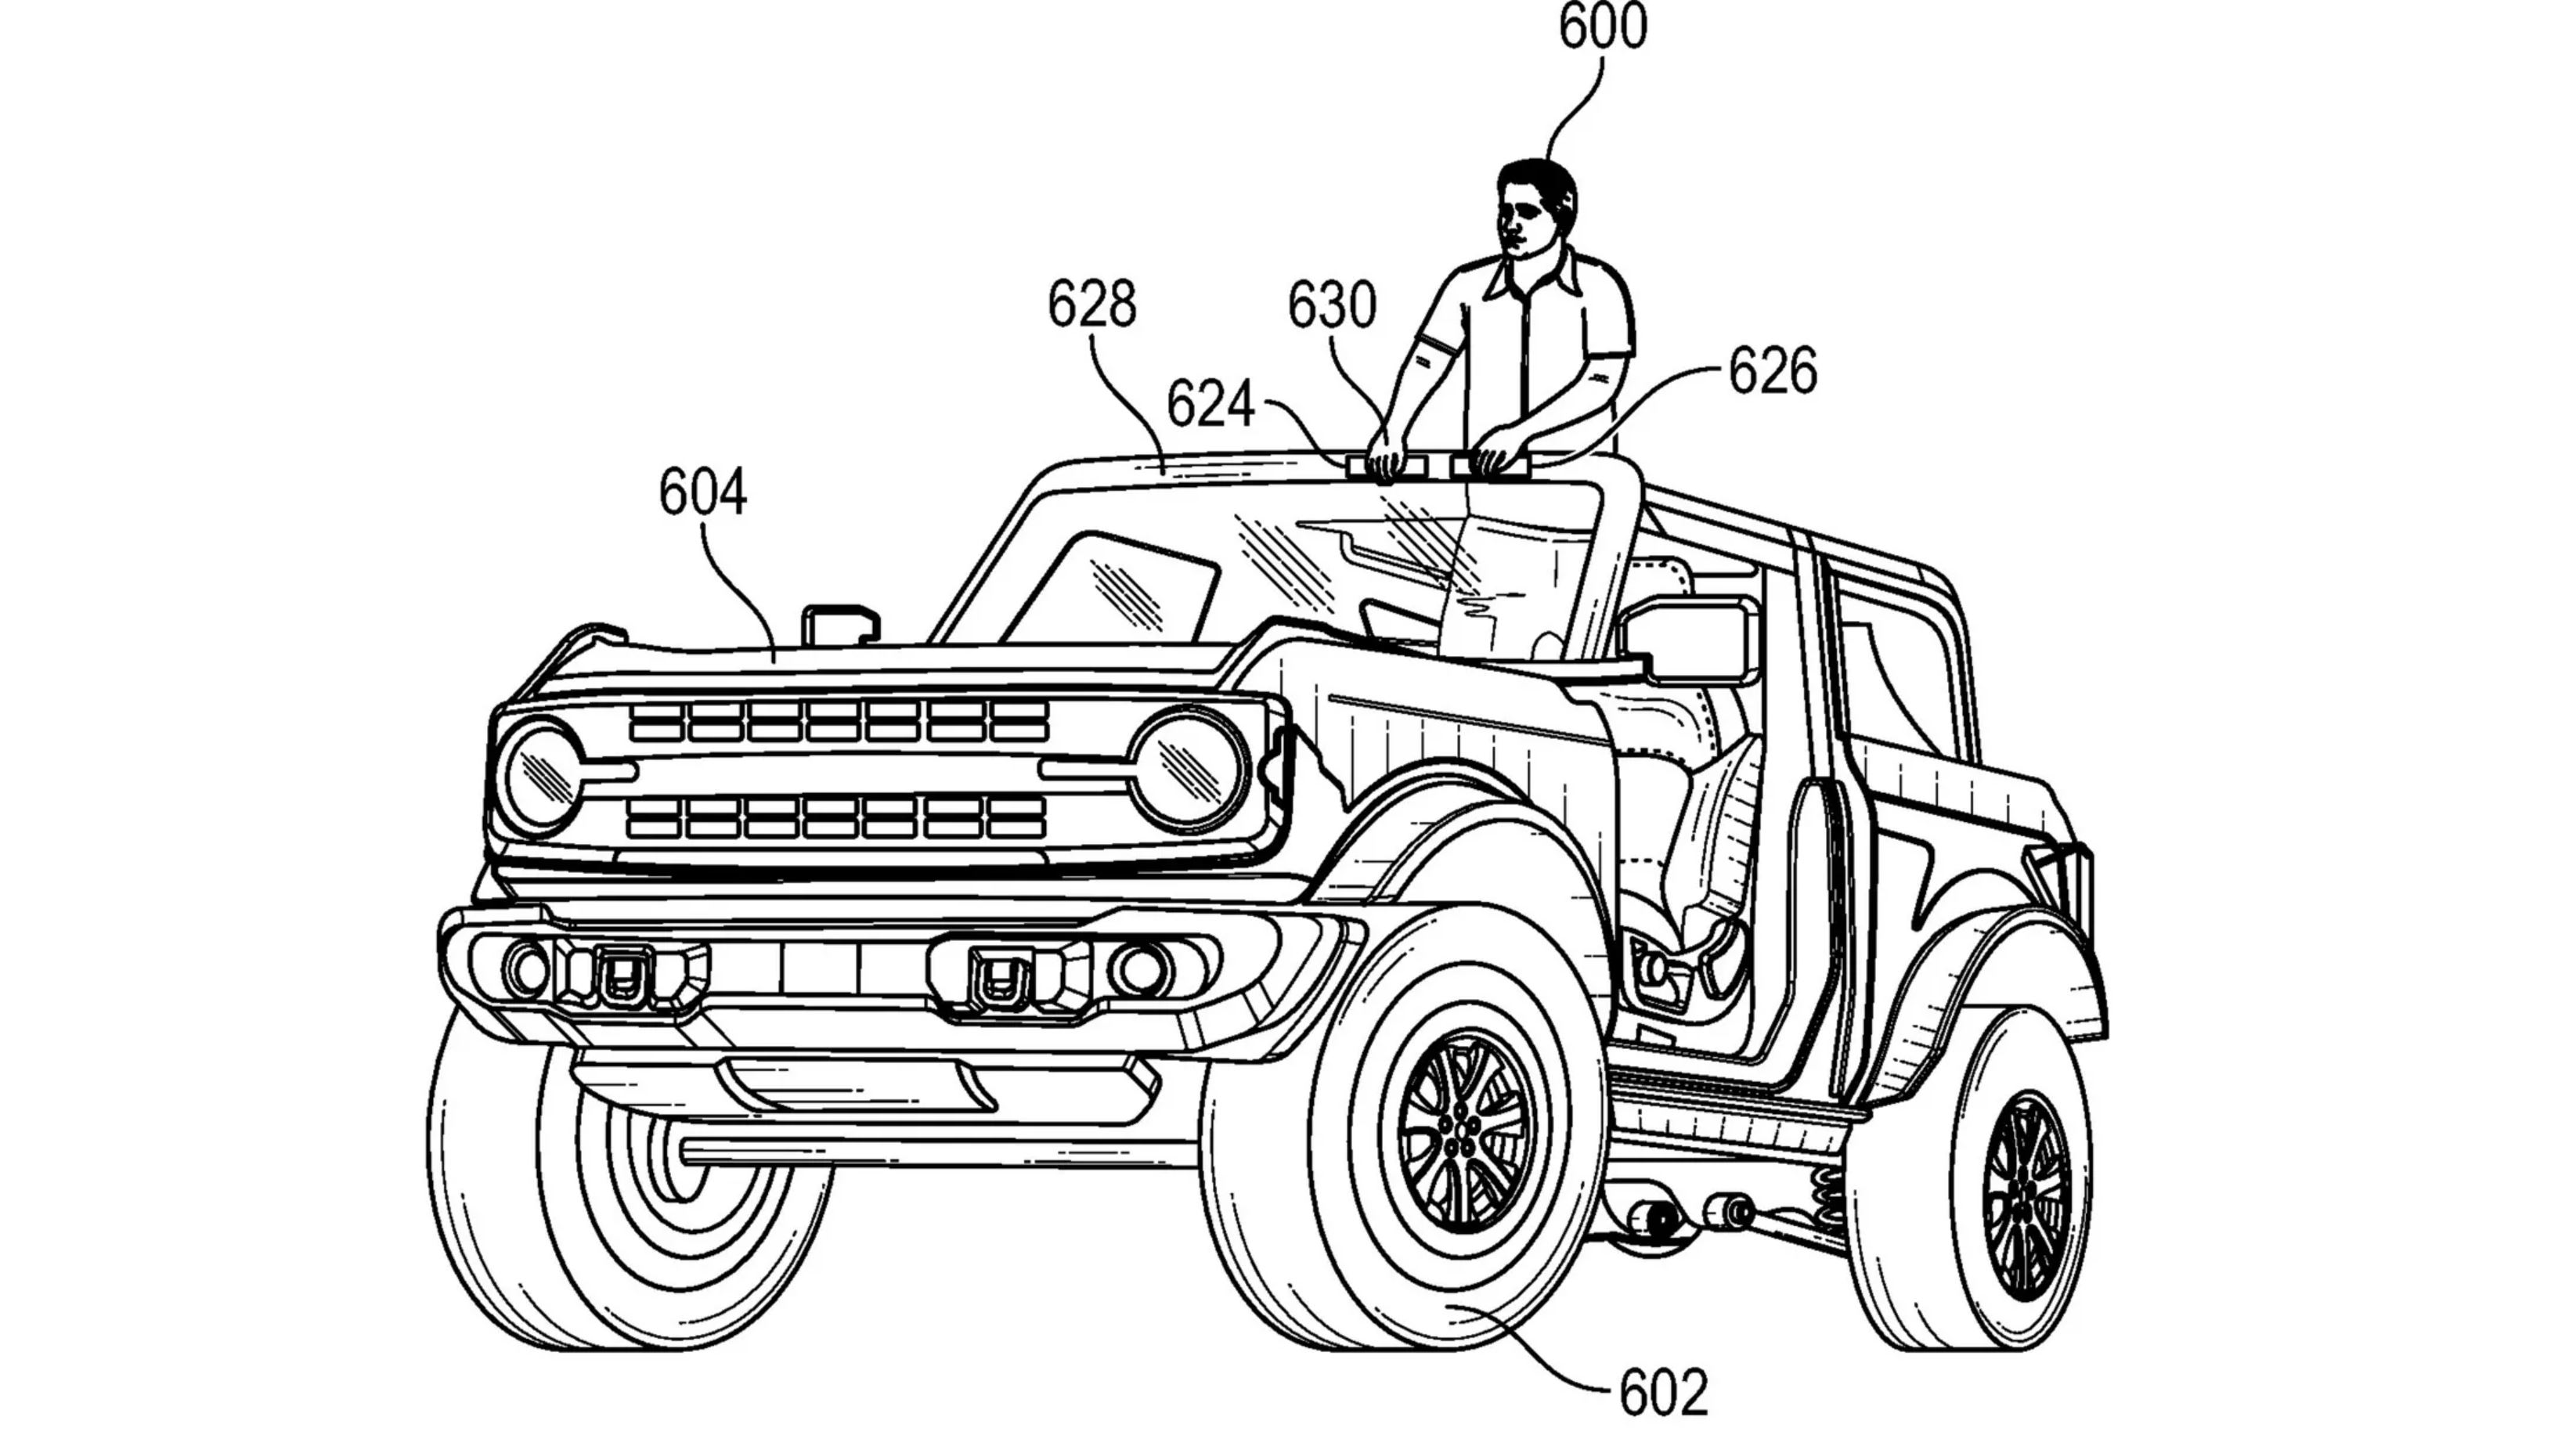 Her er illustrasjonen fra patentet. Her kommer det tydelig frem at føreren bruker kontrollerne markert «624» og «626» for å kontrollere bilen.